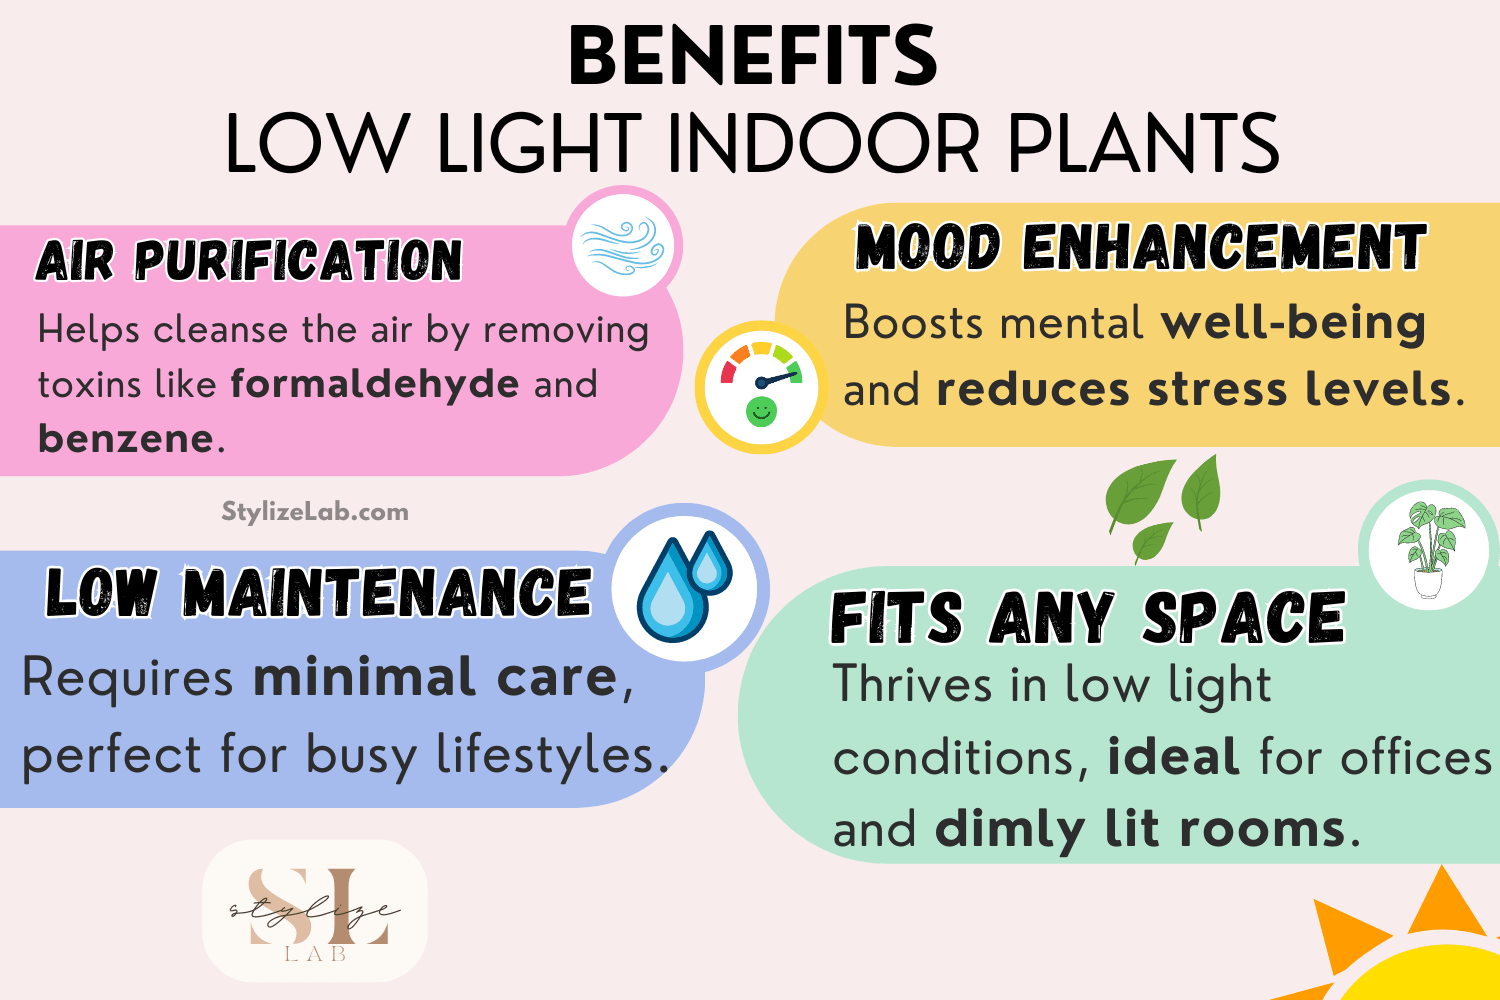 Benefits of Low Light Indoor Plants